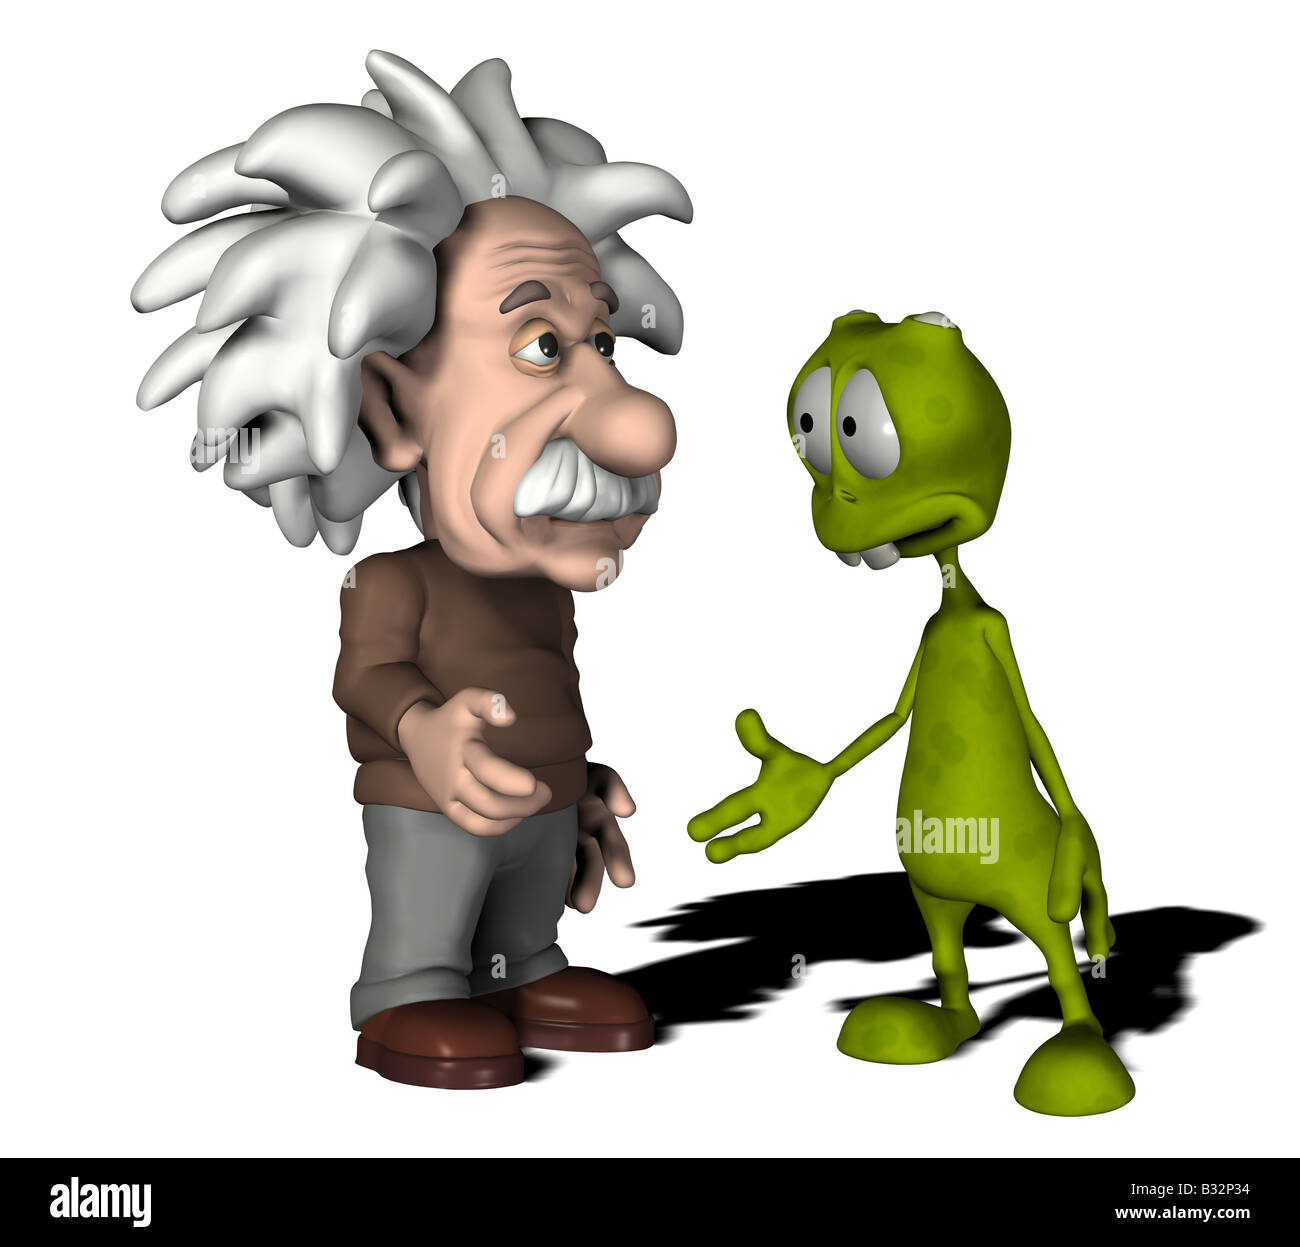 Albert Einstein with alien Stock Photo